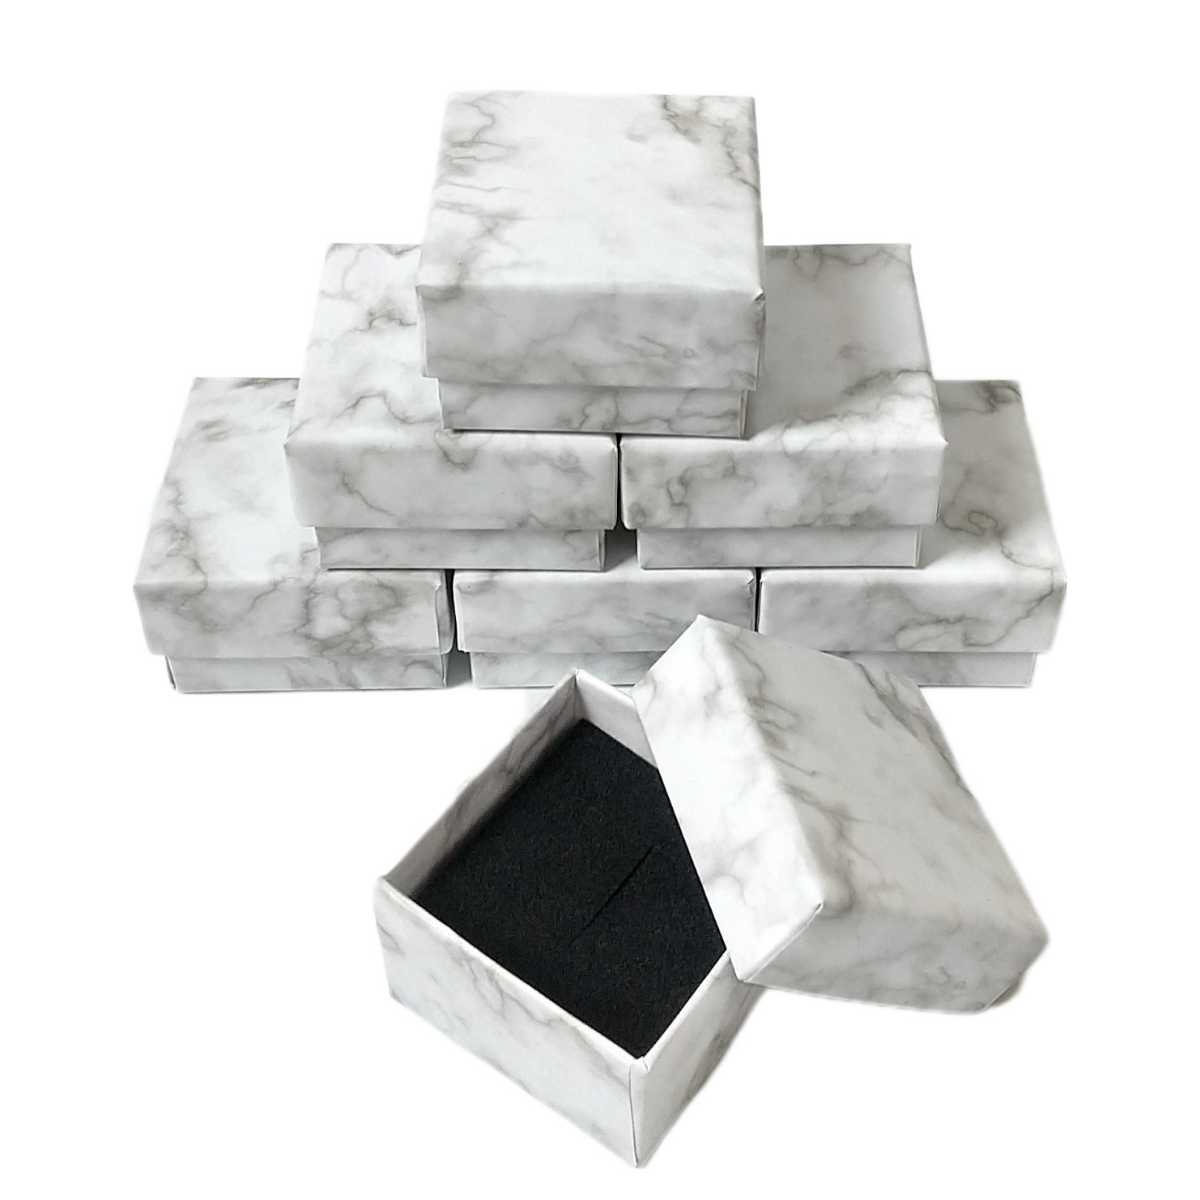 【5個セット】 ギフトボックス 大理石柄 アクセサリー ジュエリーボックス おしゃれ 正方形 箱 パッケージ 指輪 プレゼント 5cm×5cm×3cm_画像7